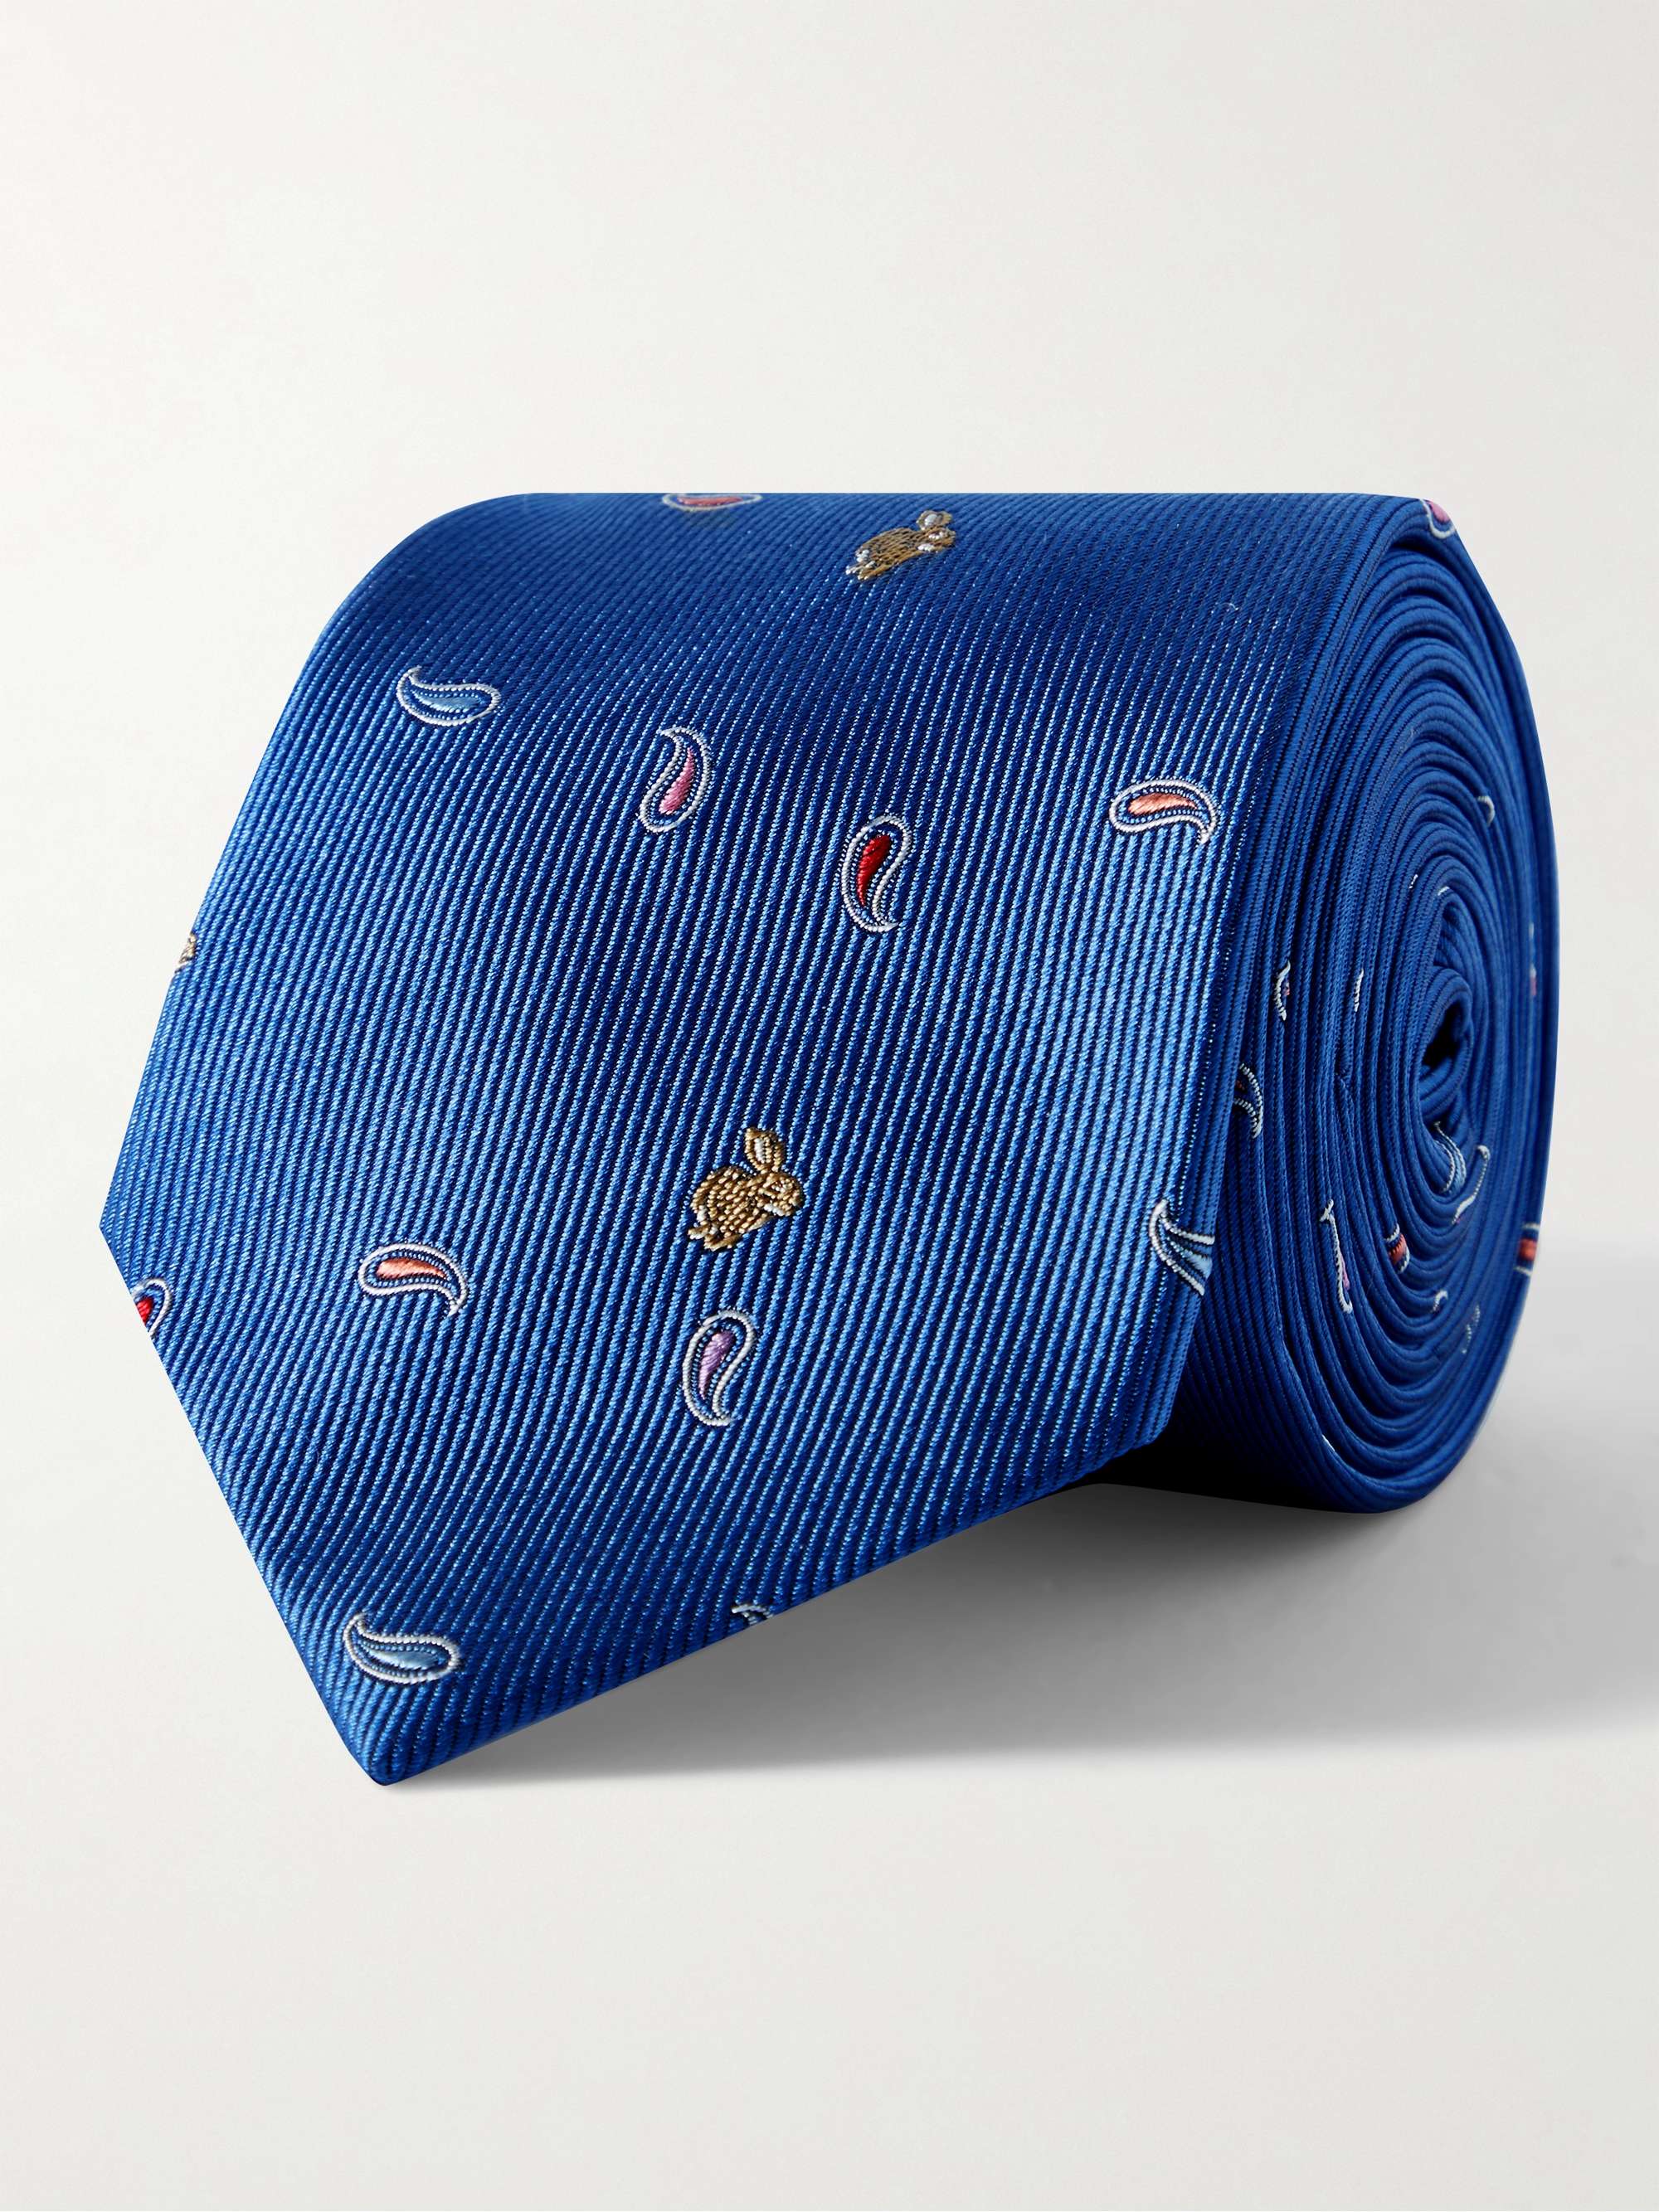 Cravatta in twill di seta ricamata, 8 cm | MR PORTER